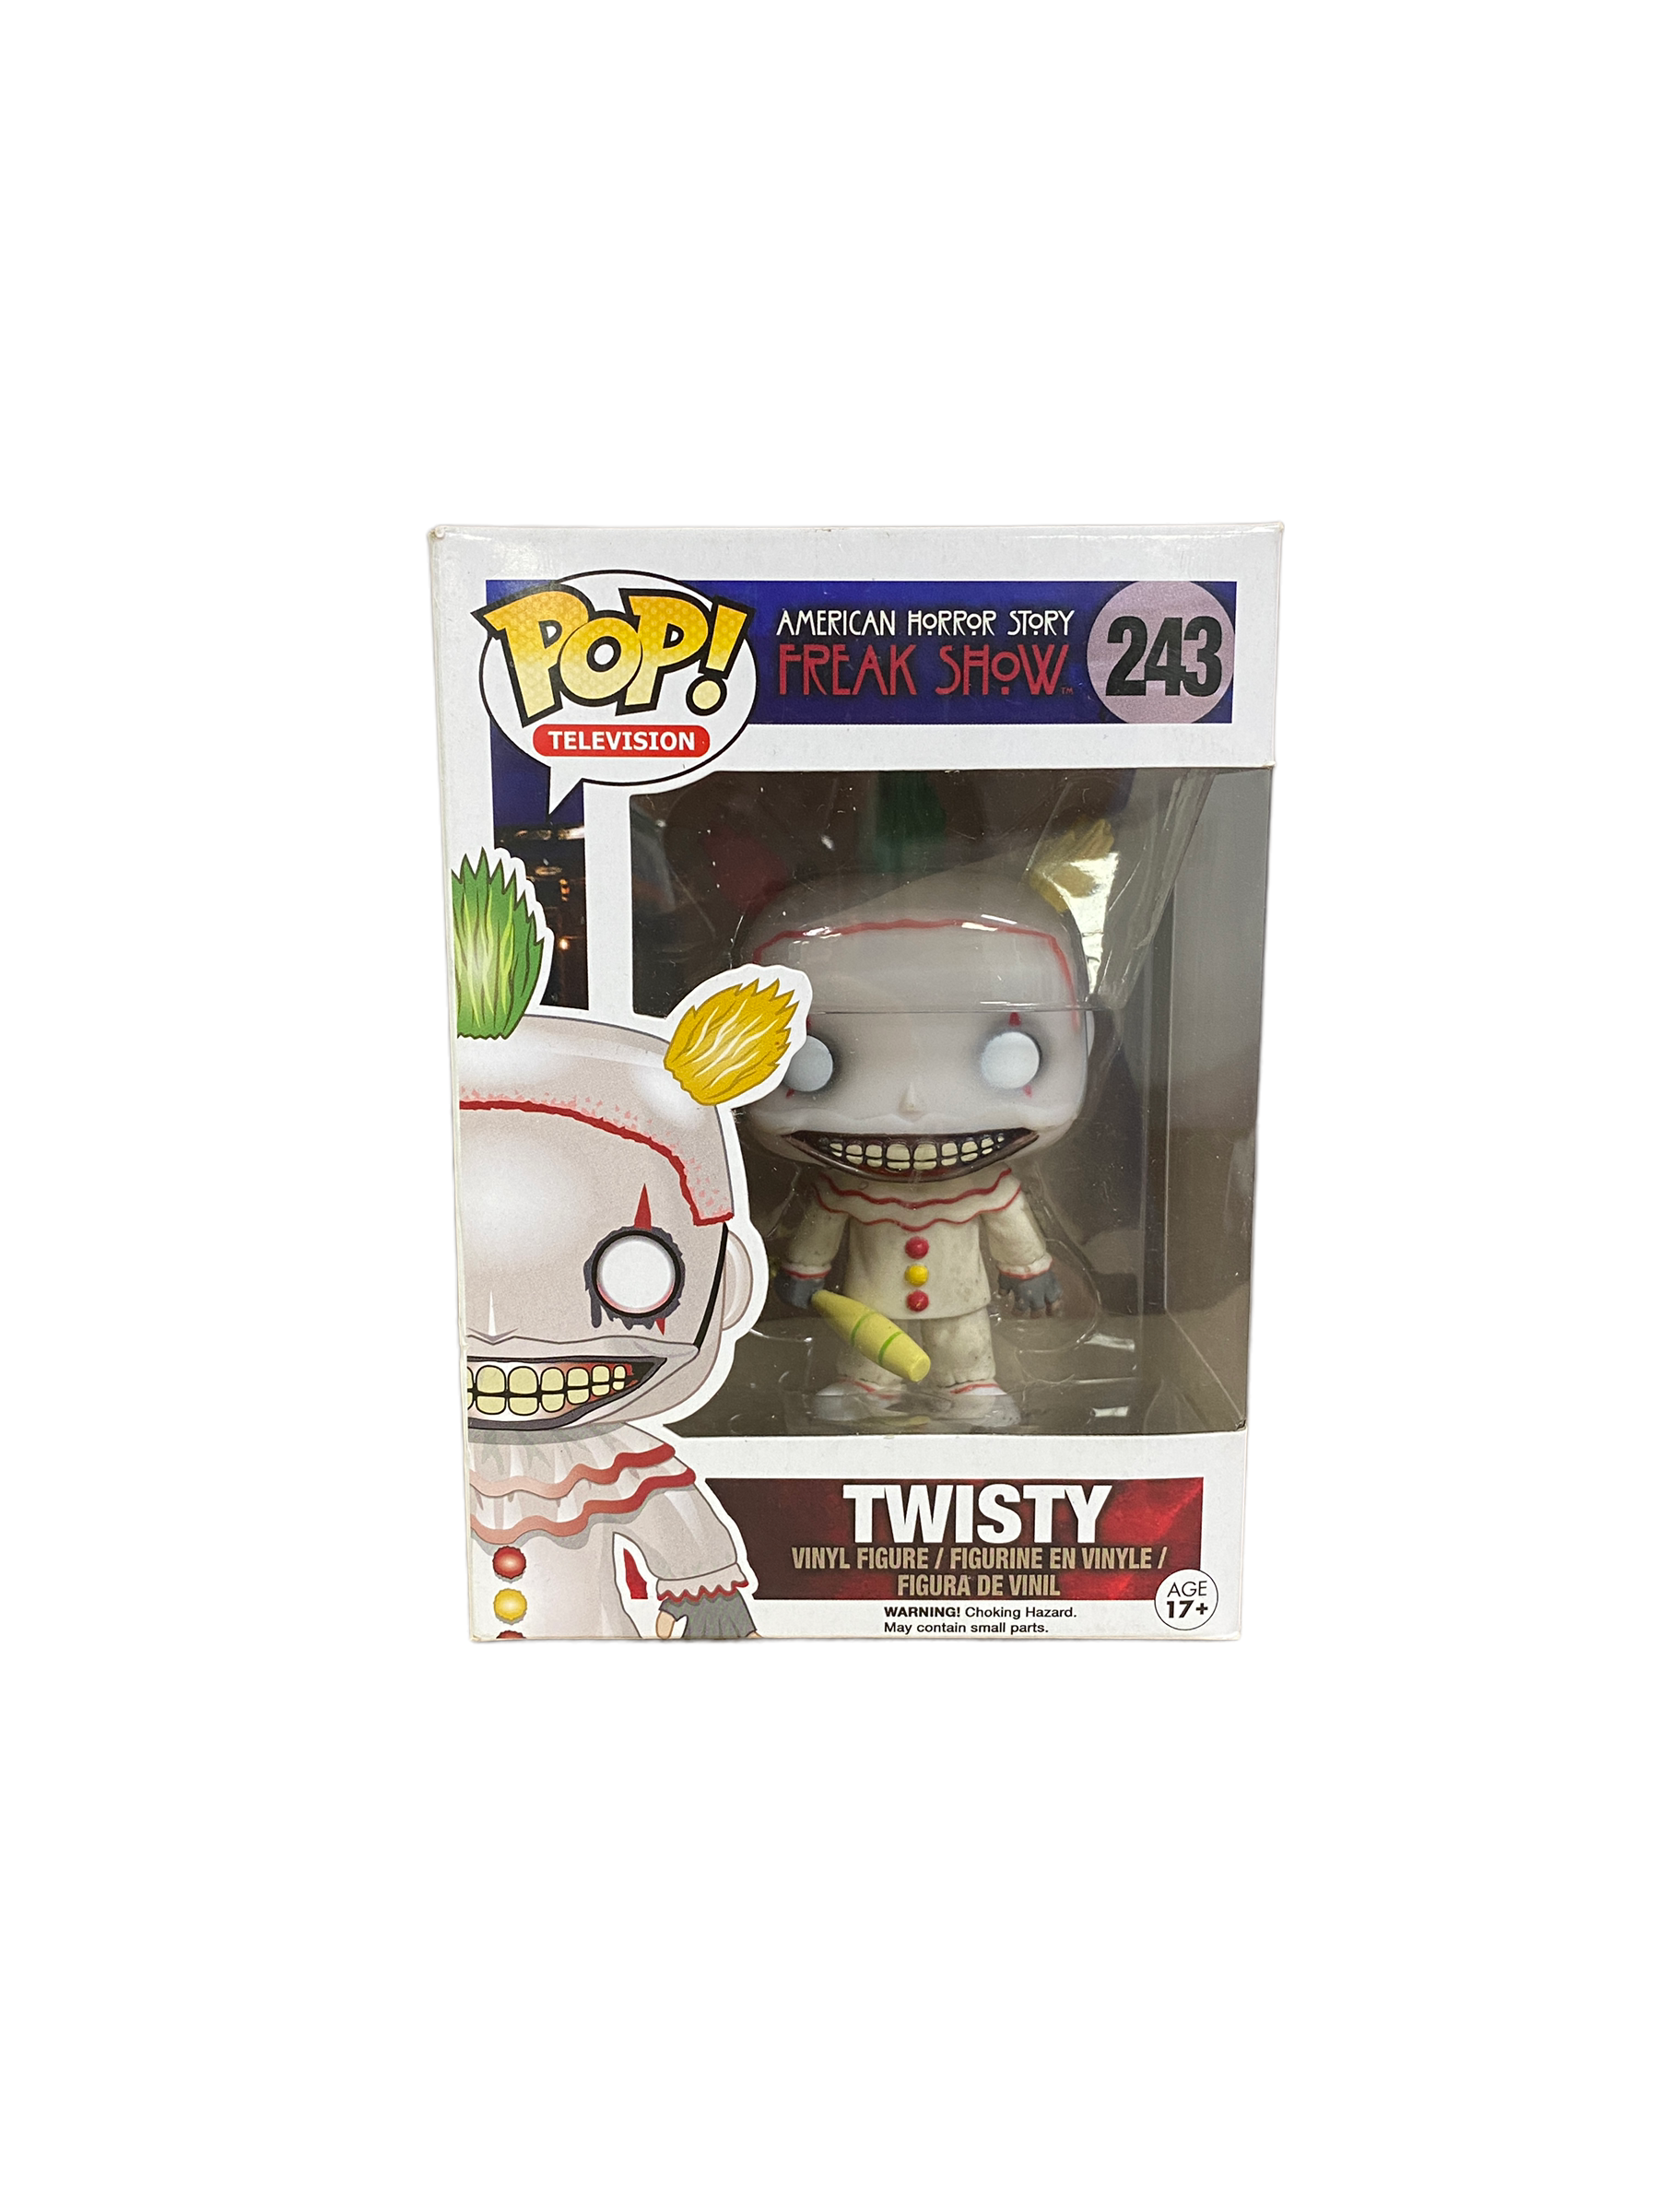 Twisty #243 Funko Pop! - American Horror Story Freak Show - 2015 Pop! - Condition 7.5/10